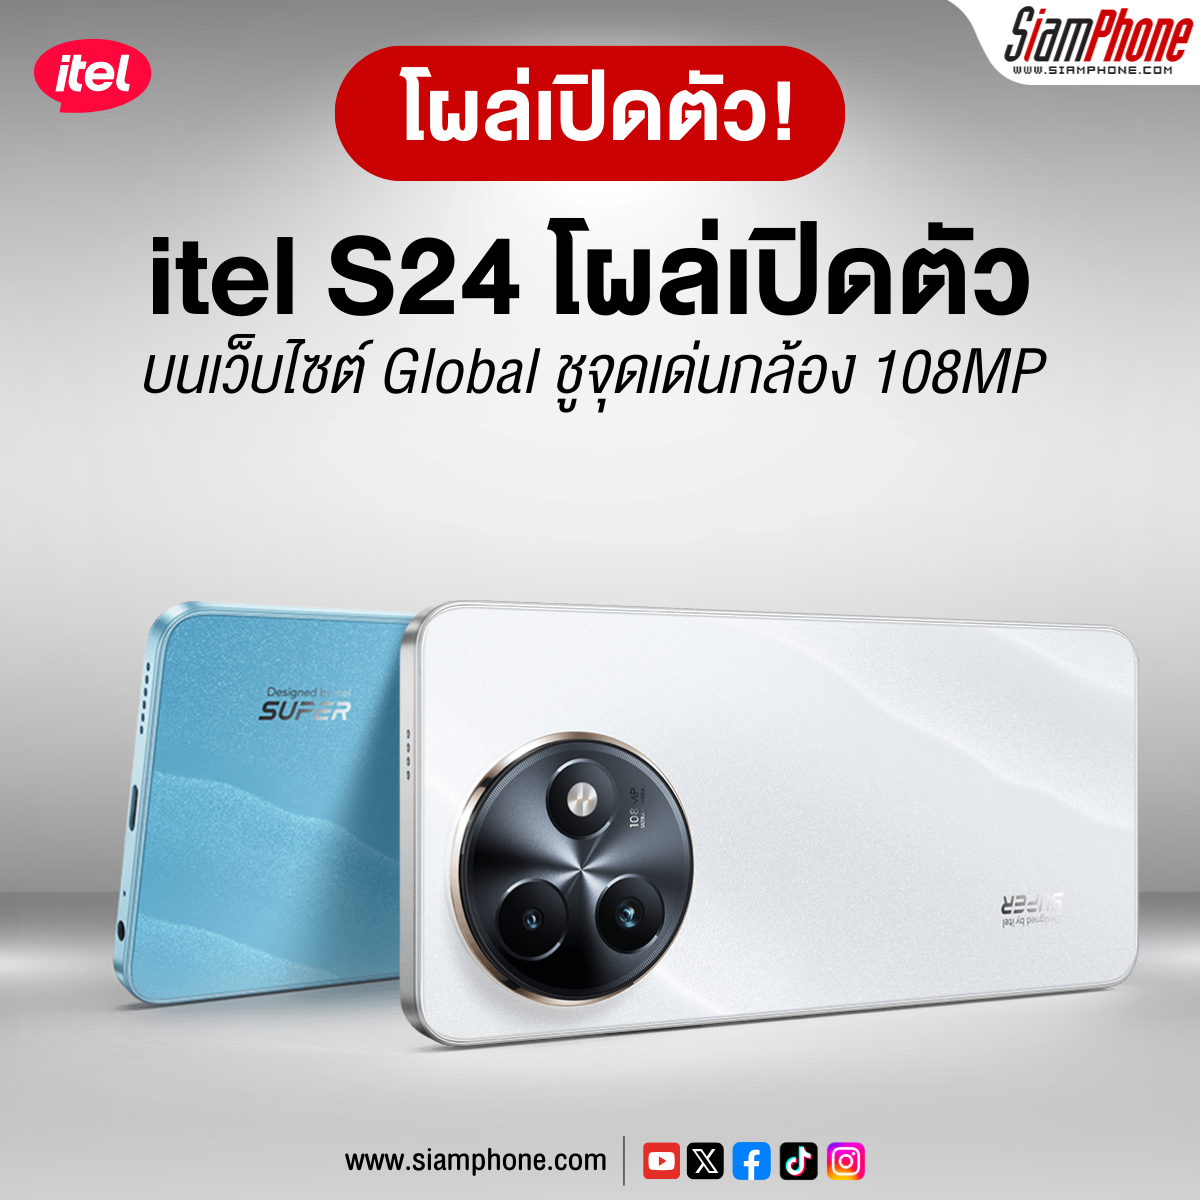 itel S24 โผล่เปิดตัวบนเว็บไซต์ Global ชูจุดเด่นกล้อง 108MP